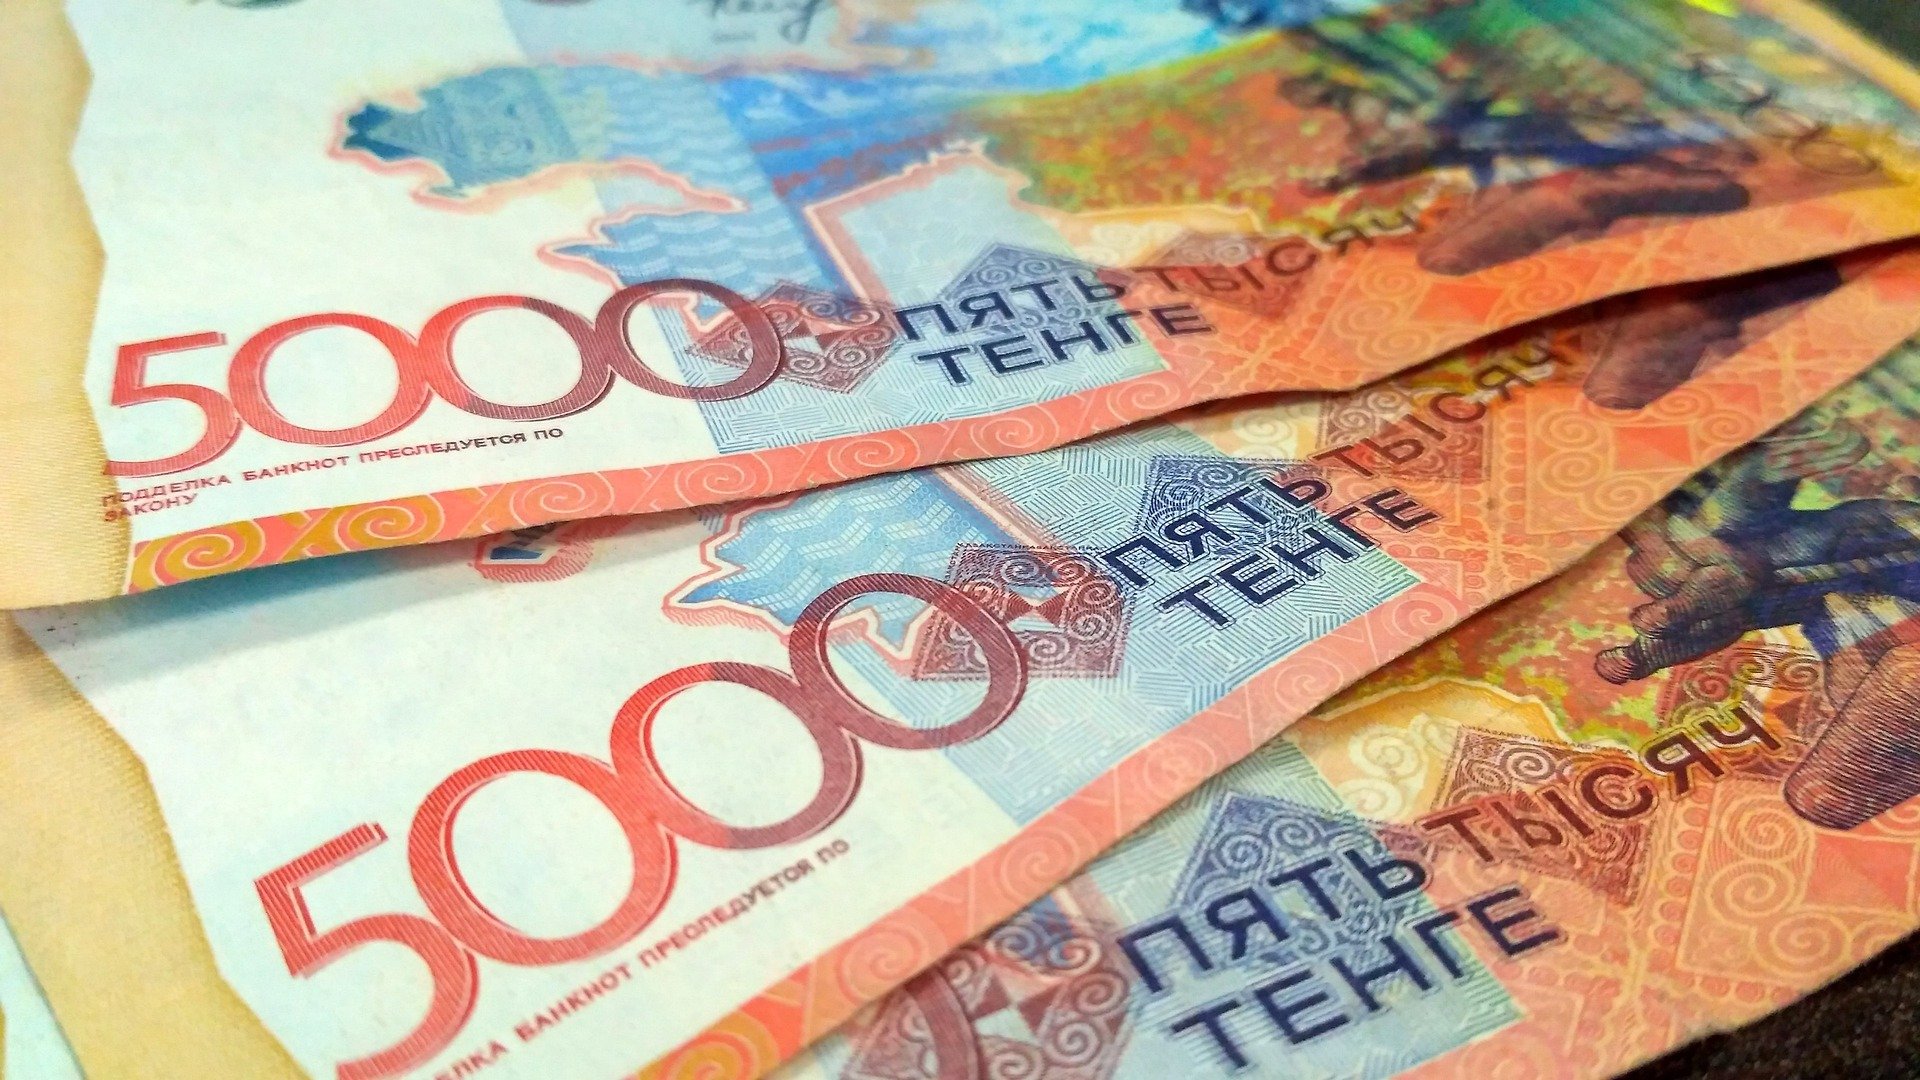 Сколько процентов от дохода казахстанцы тратят на покупку еды, выяснили аналитики